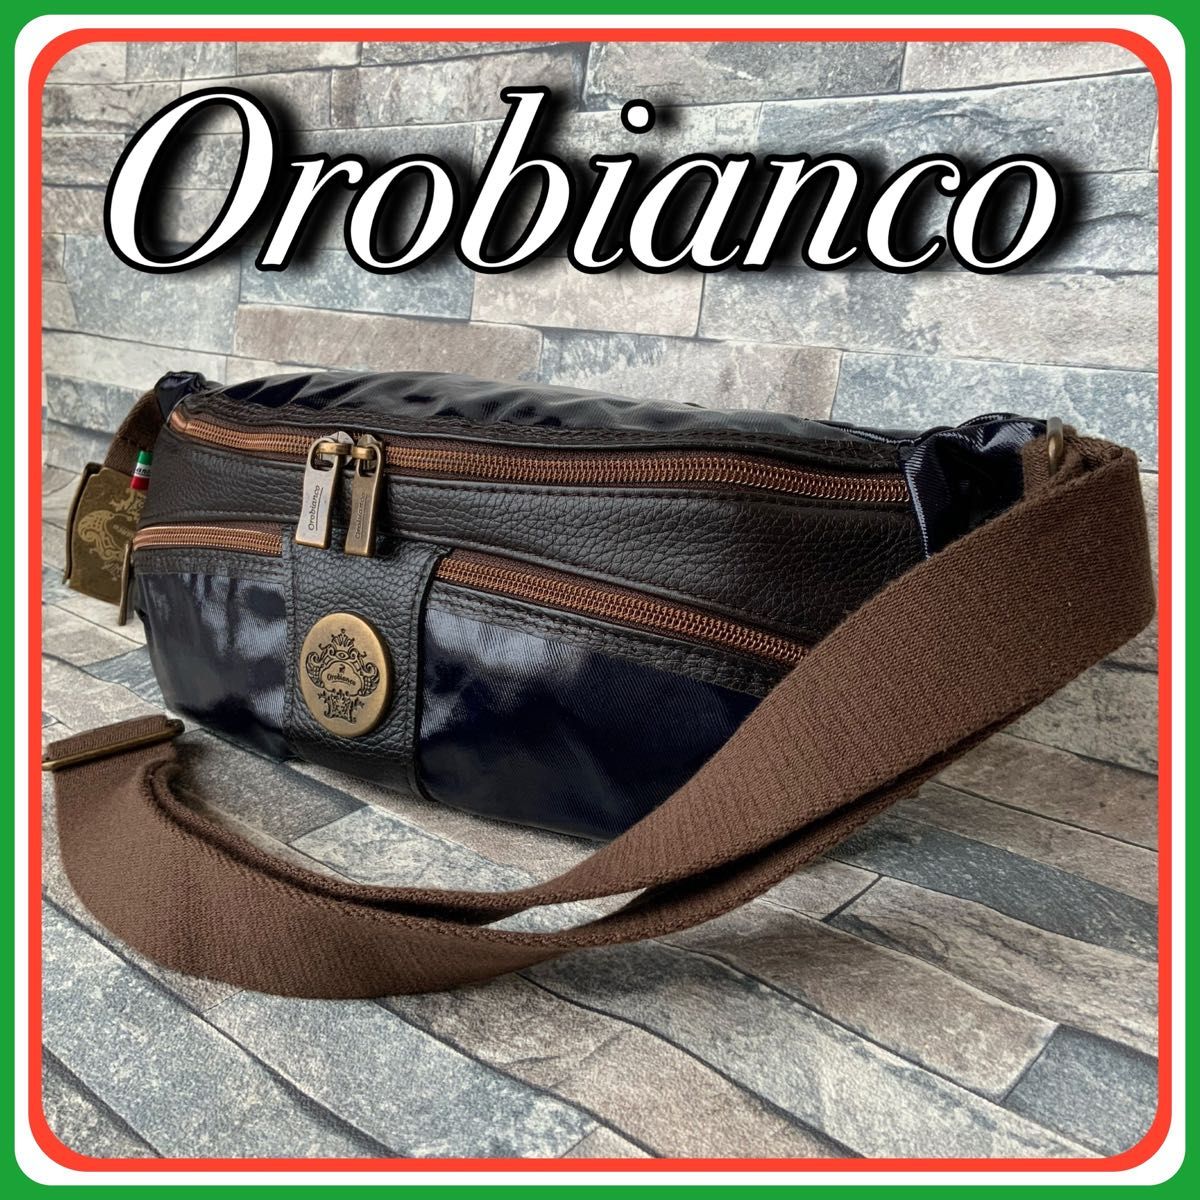 ◆ Orobiancoオロビアンコ ボディバッグ メンズ カジュアル 鞄  ウエストポーチ ショルダーバッグ